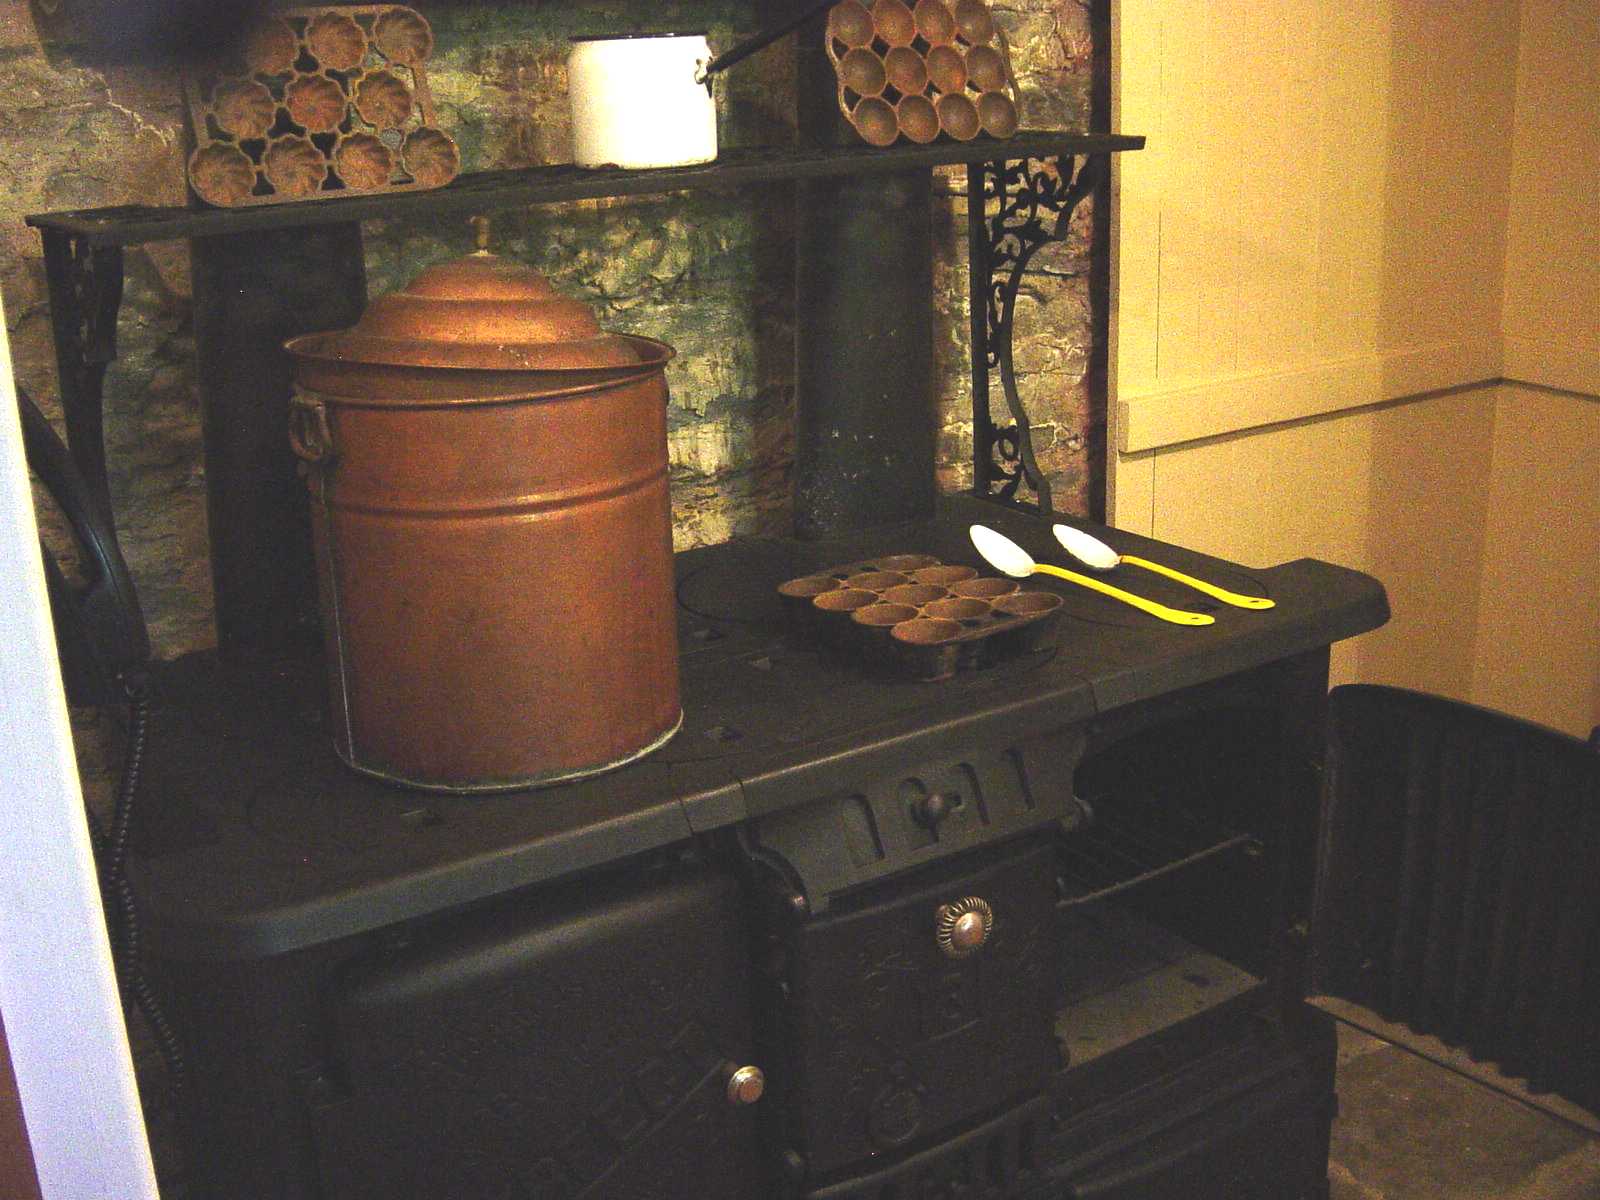 The kitchen (not original stove)